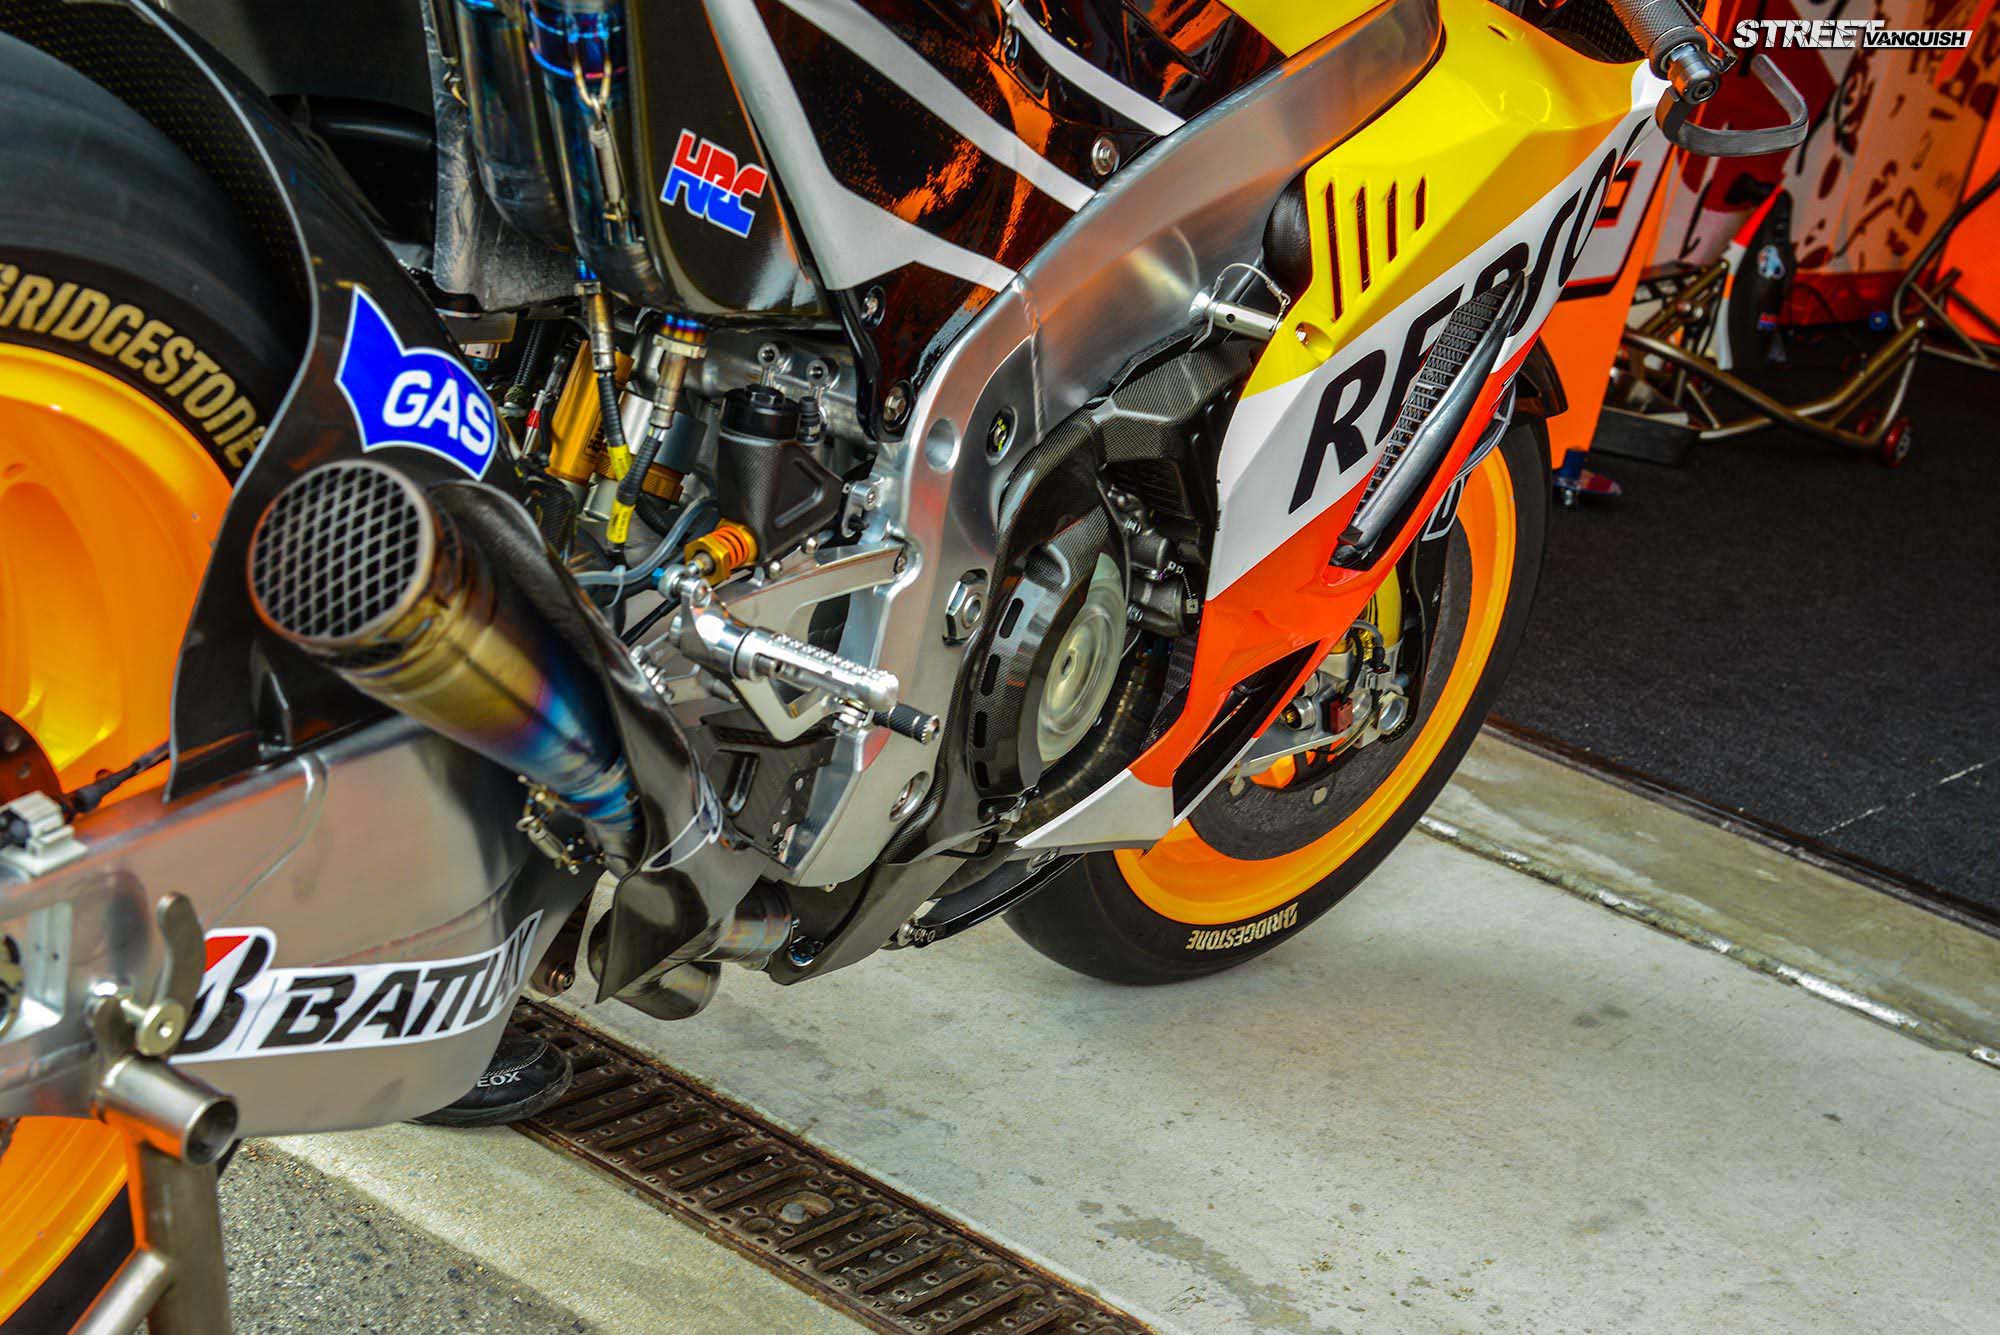 MotoGP Seamless Gearbox Street Vanquish